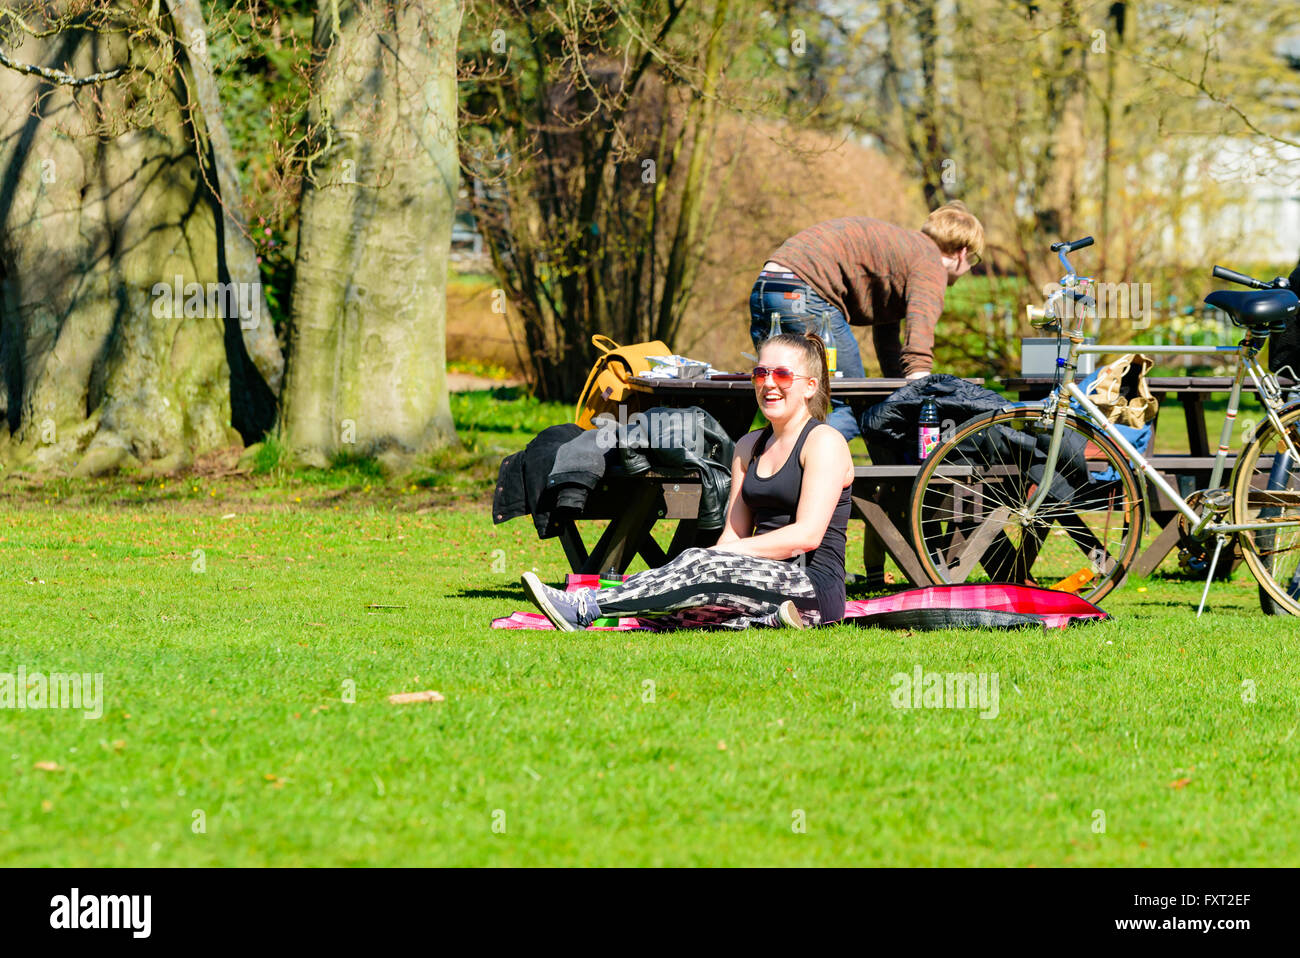 Lund, Svezia - 11 Aprile 2016: ogni giorno la vita della città. Giovane donna adulta a sedersi su una coperta in un parco sorridente presso l'attività intorno a h Foto Stock